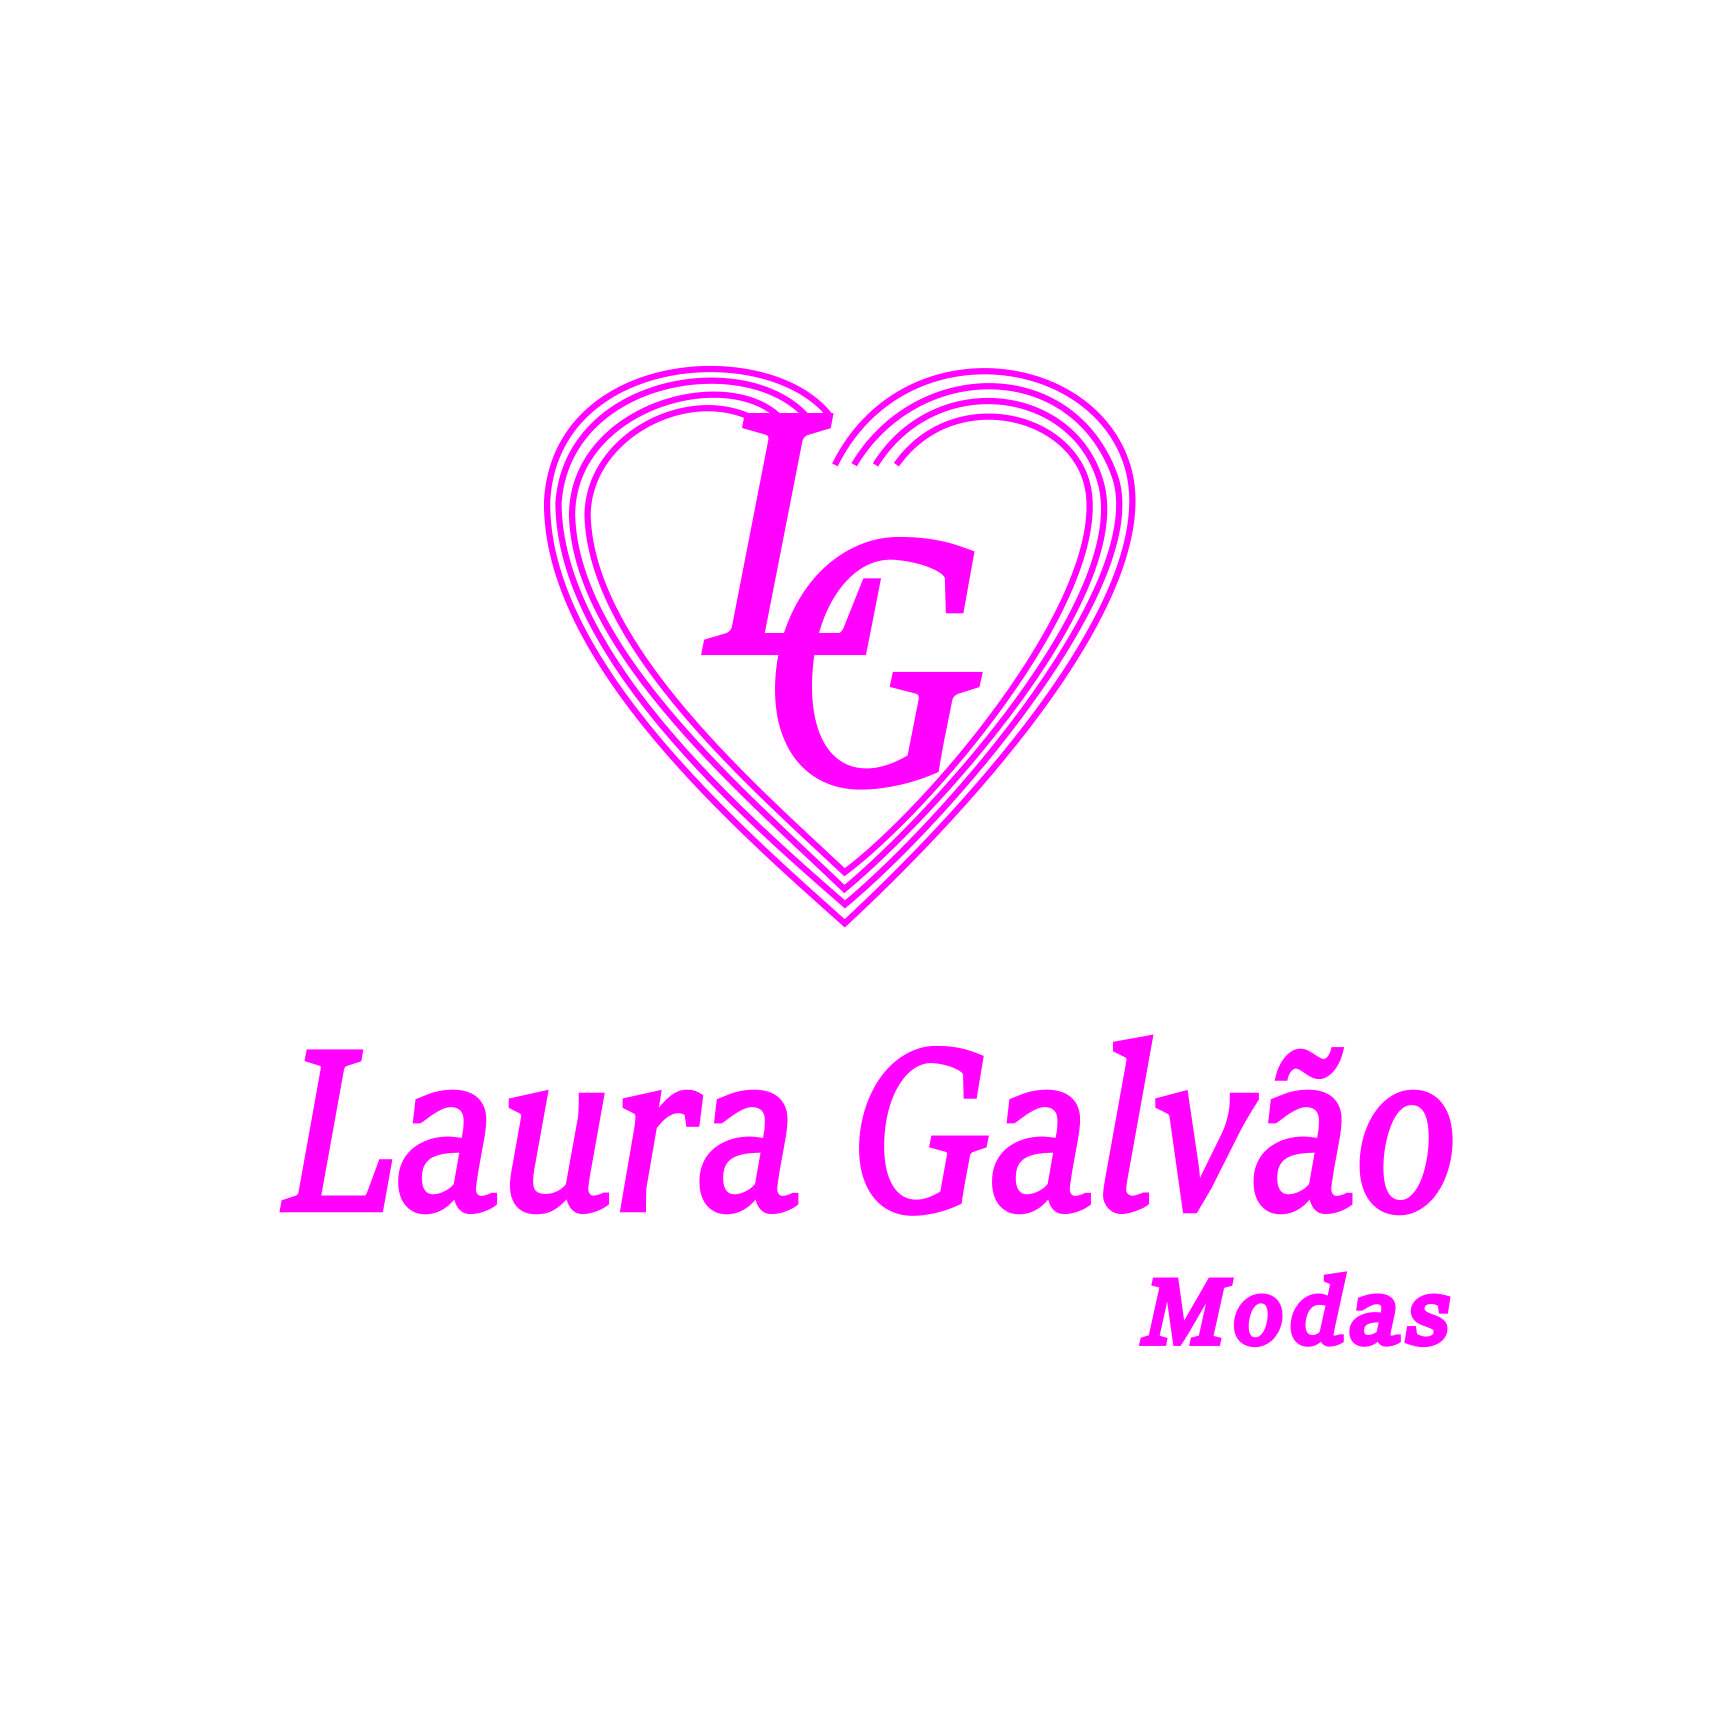 Laura Galvão Modas Logo